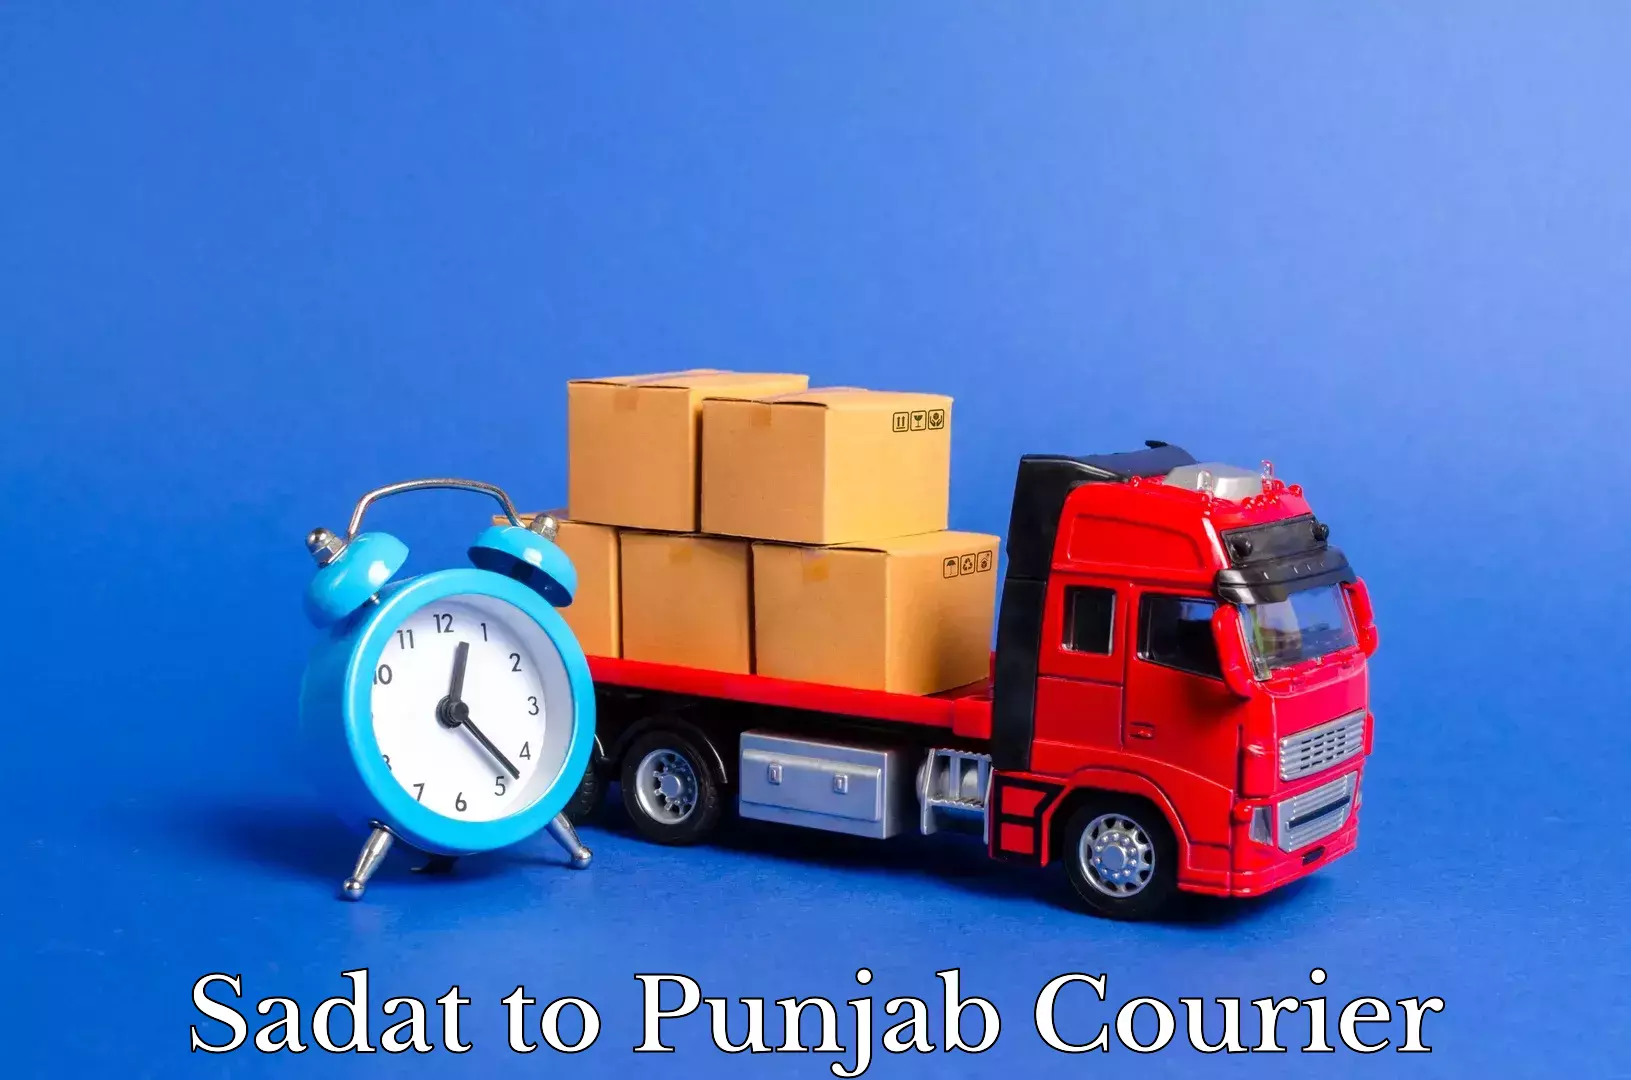 Reliable furniture transport Sadat to Punjab